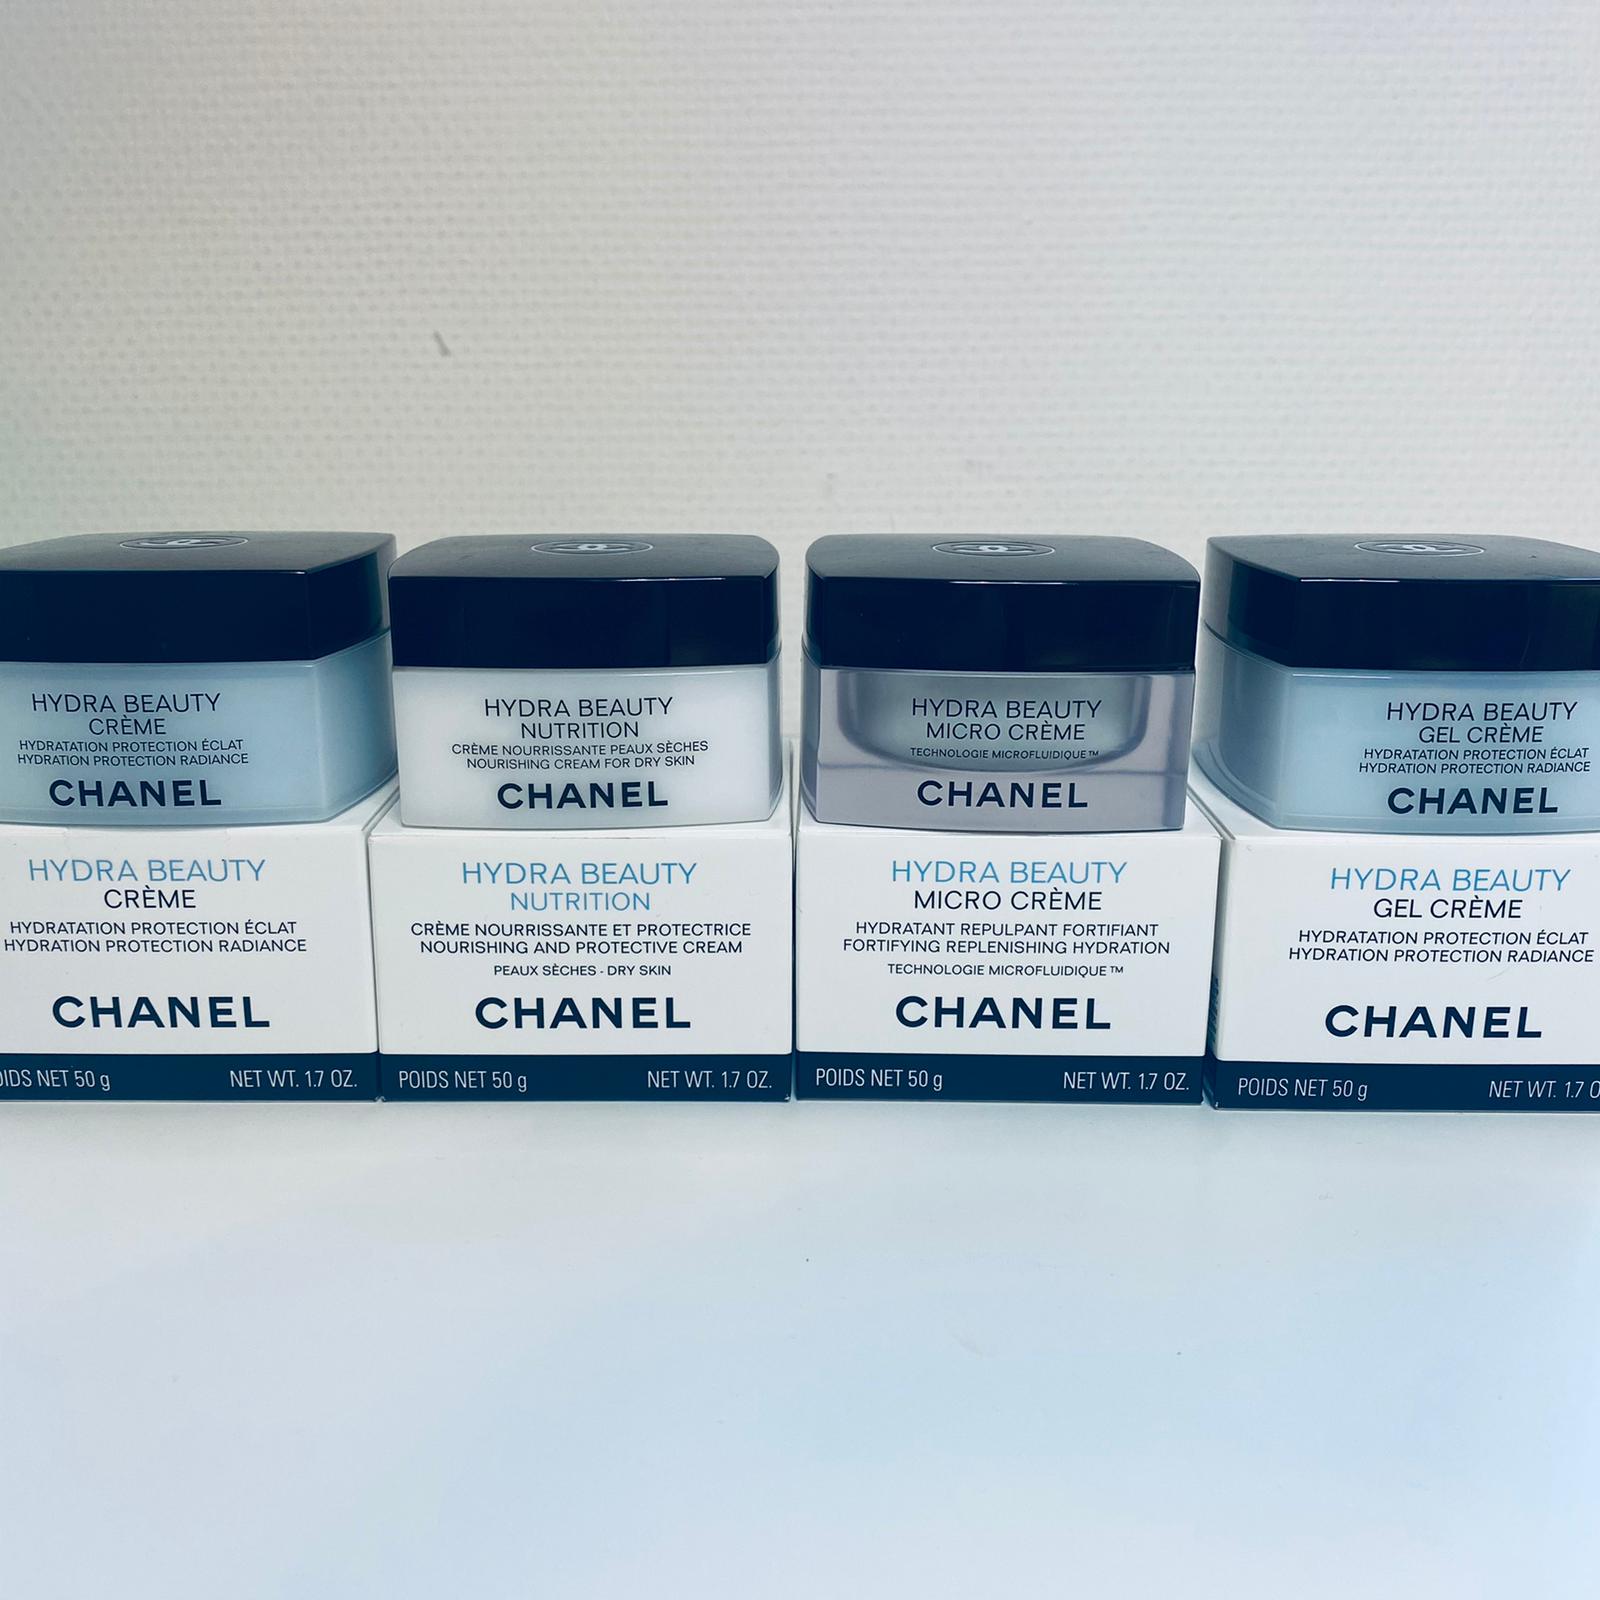 Chanel hydra beauty creme 50 g